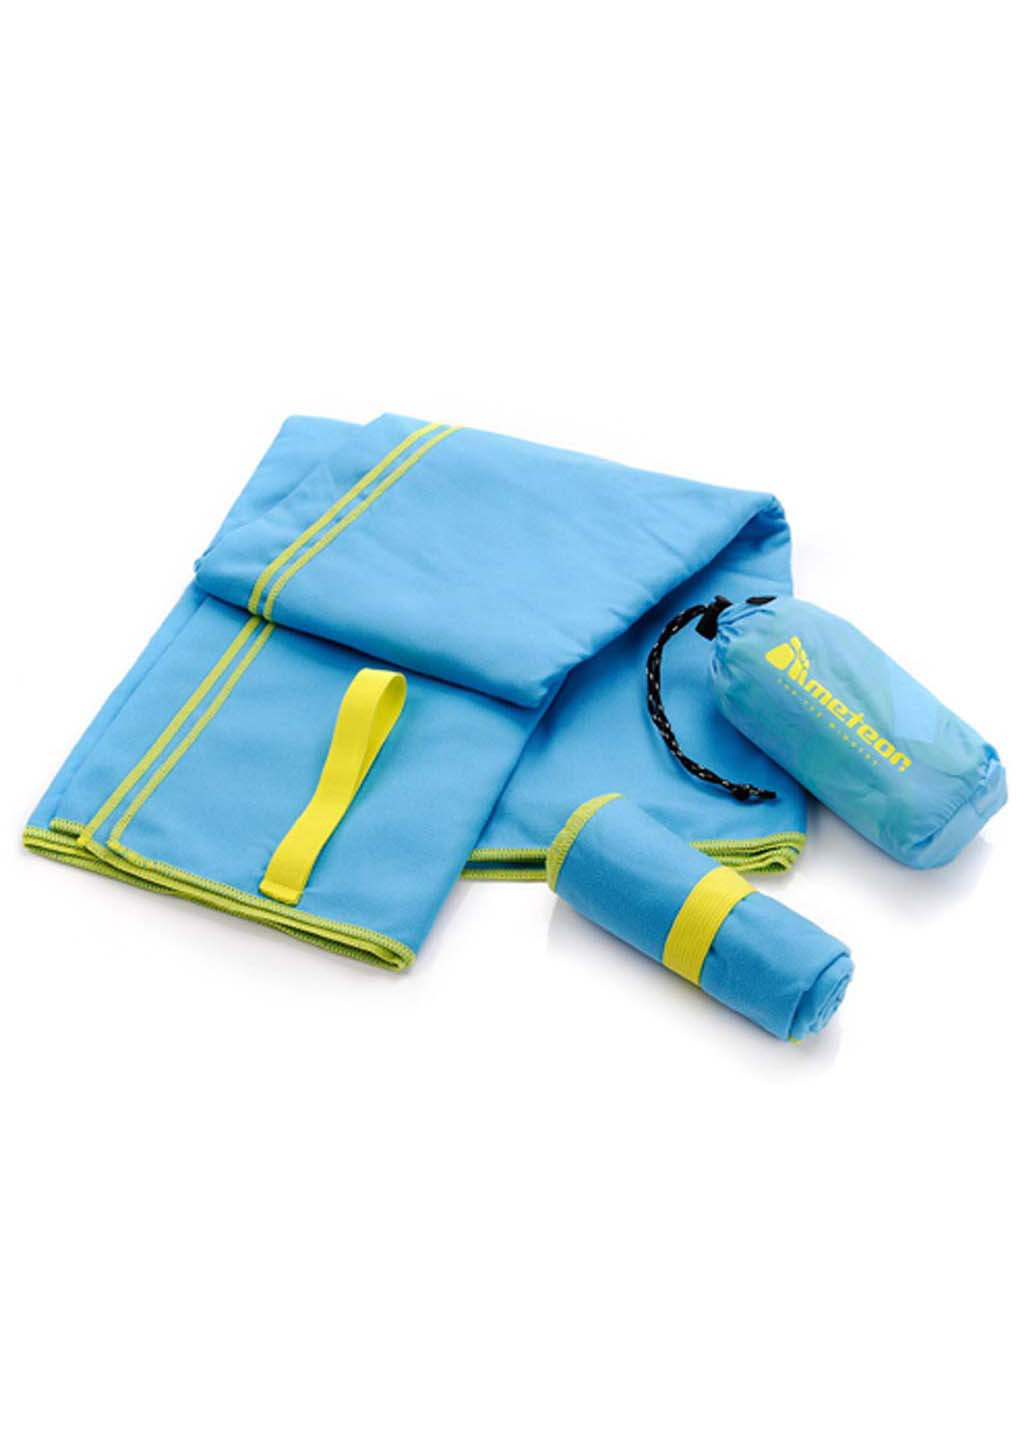 Meteor полотенце голубой производство -